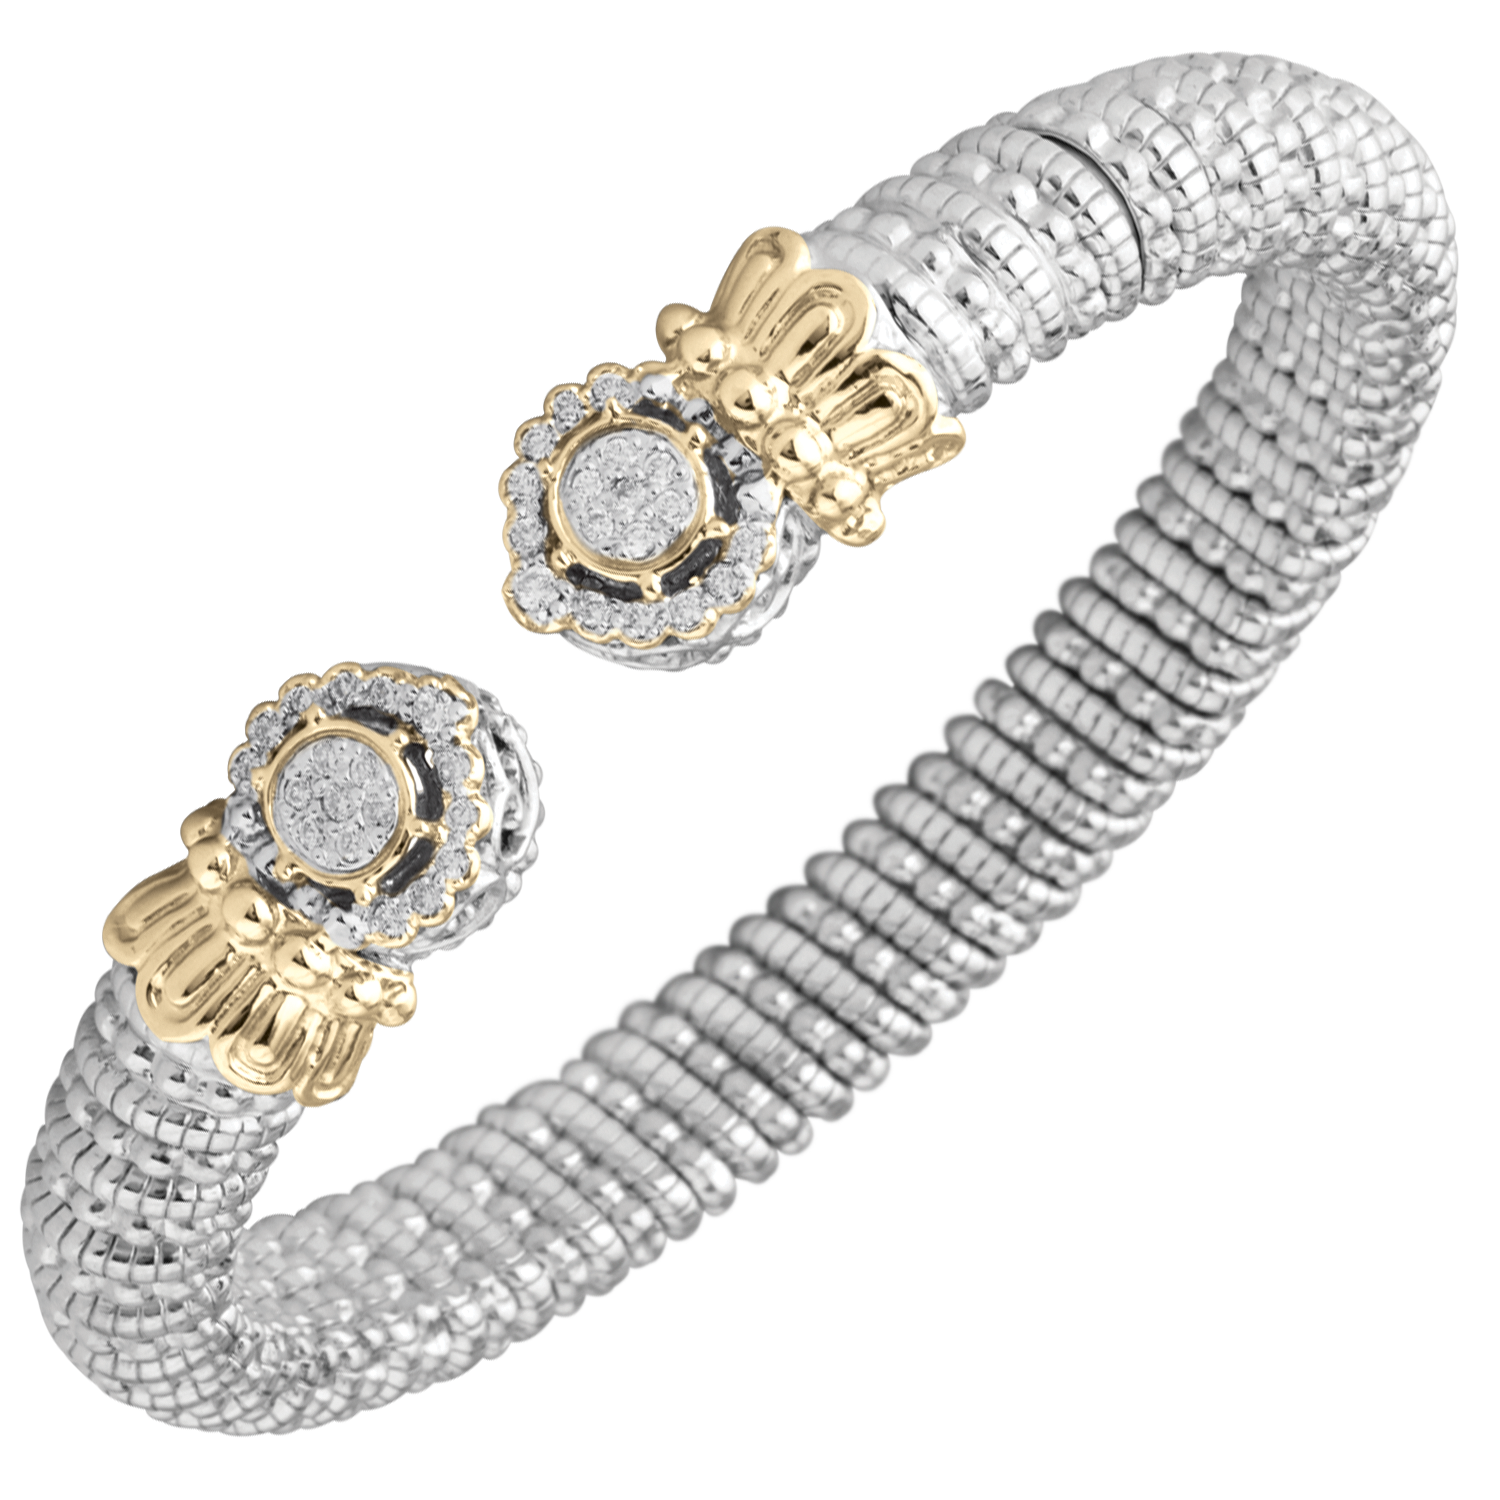 Buy Vahan Bracelets | Sterling Silver & 14K Gold | 0.29cttw Diamonds | 8mm Width | Shop Avonlea Jewelry only at Avonlea Jewelry.